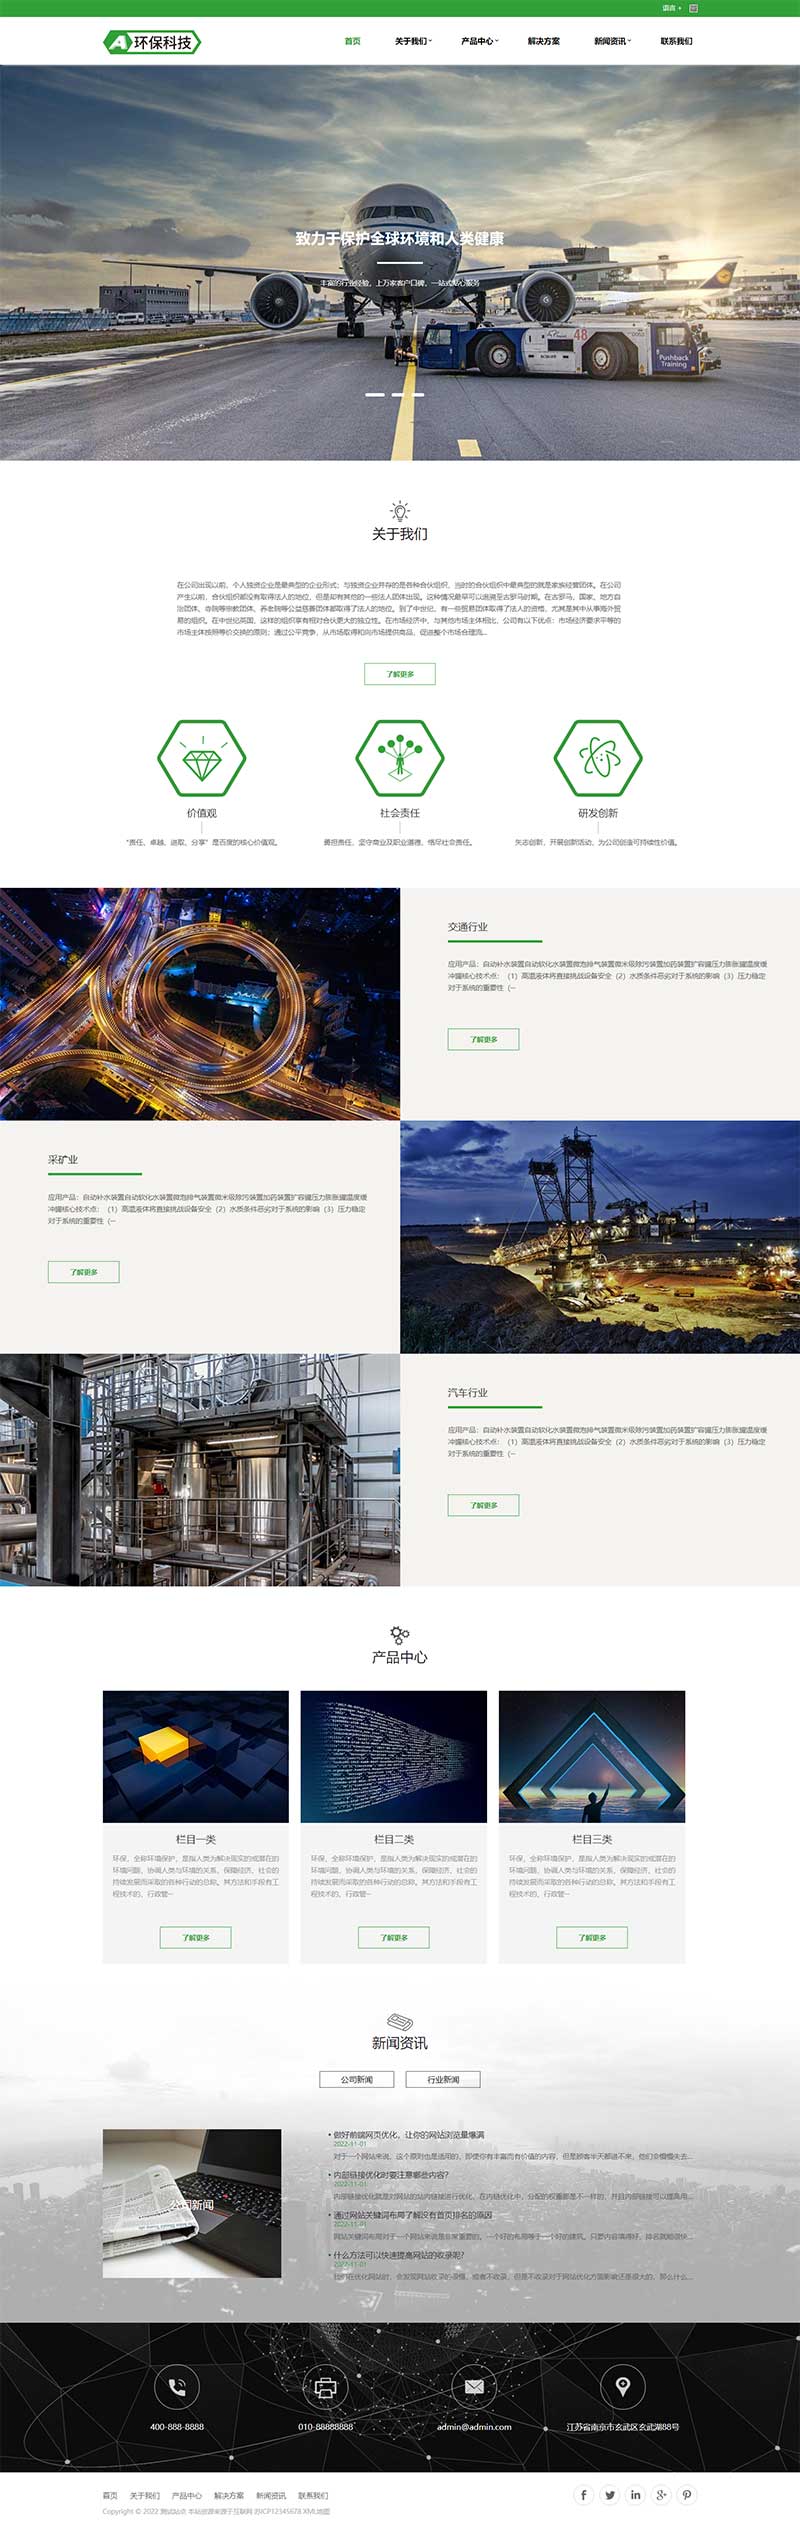 (自适应移动端)绿色大气简繁语言环保设备企业网站电脑端模板展示图片